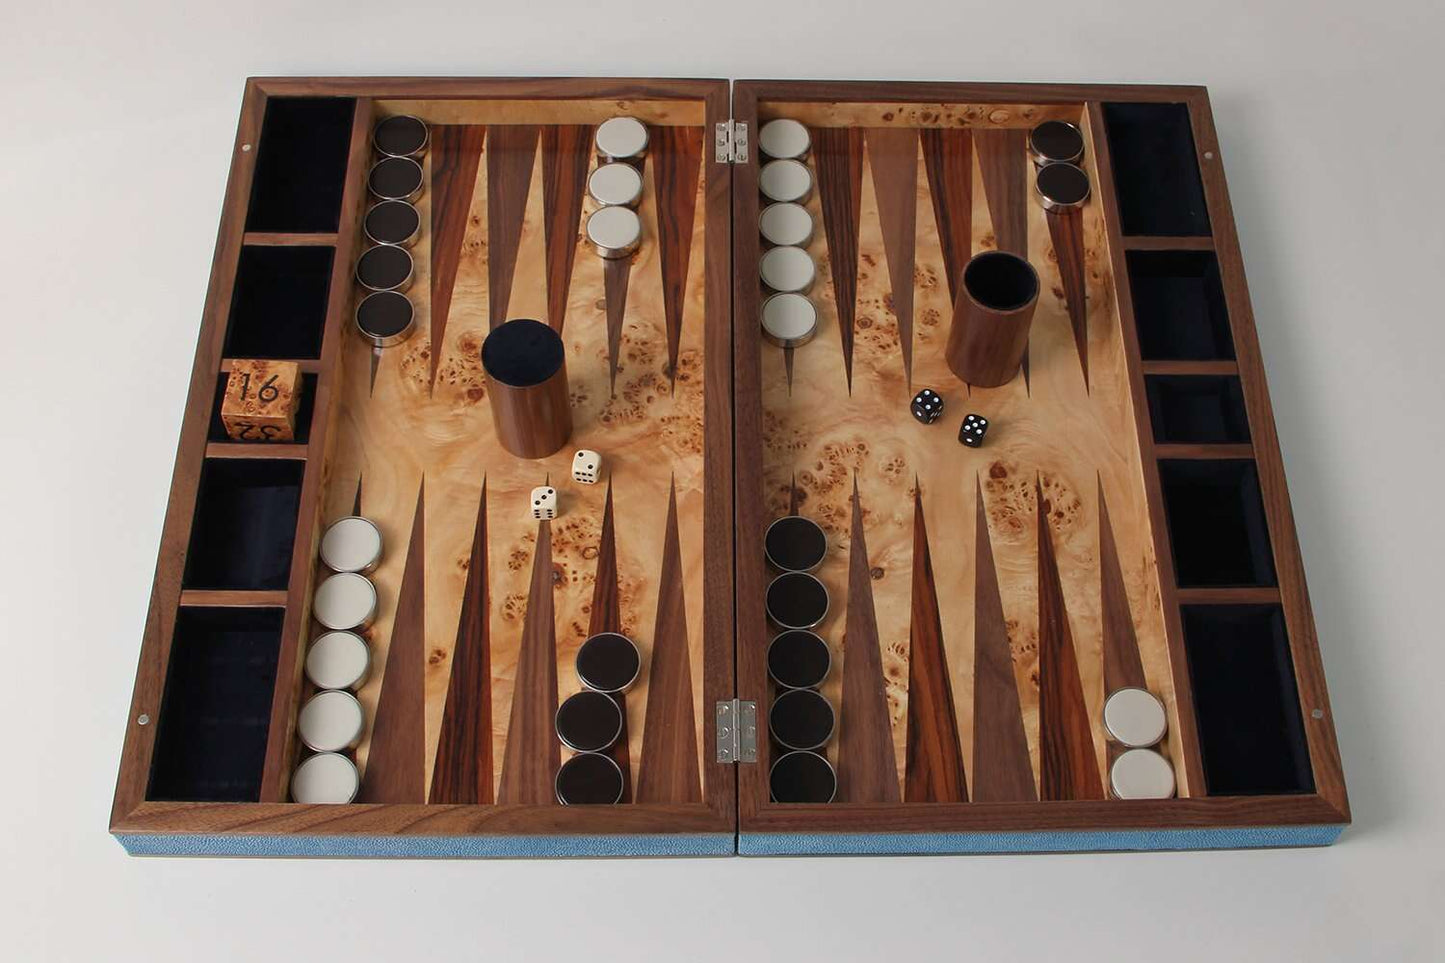 Deluxe Backgammon Board in Duke Blue